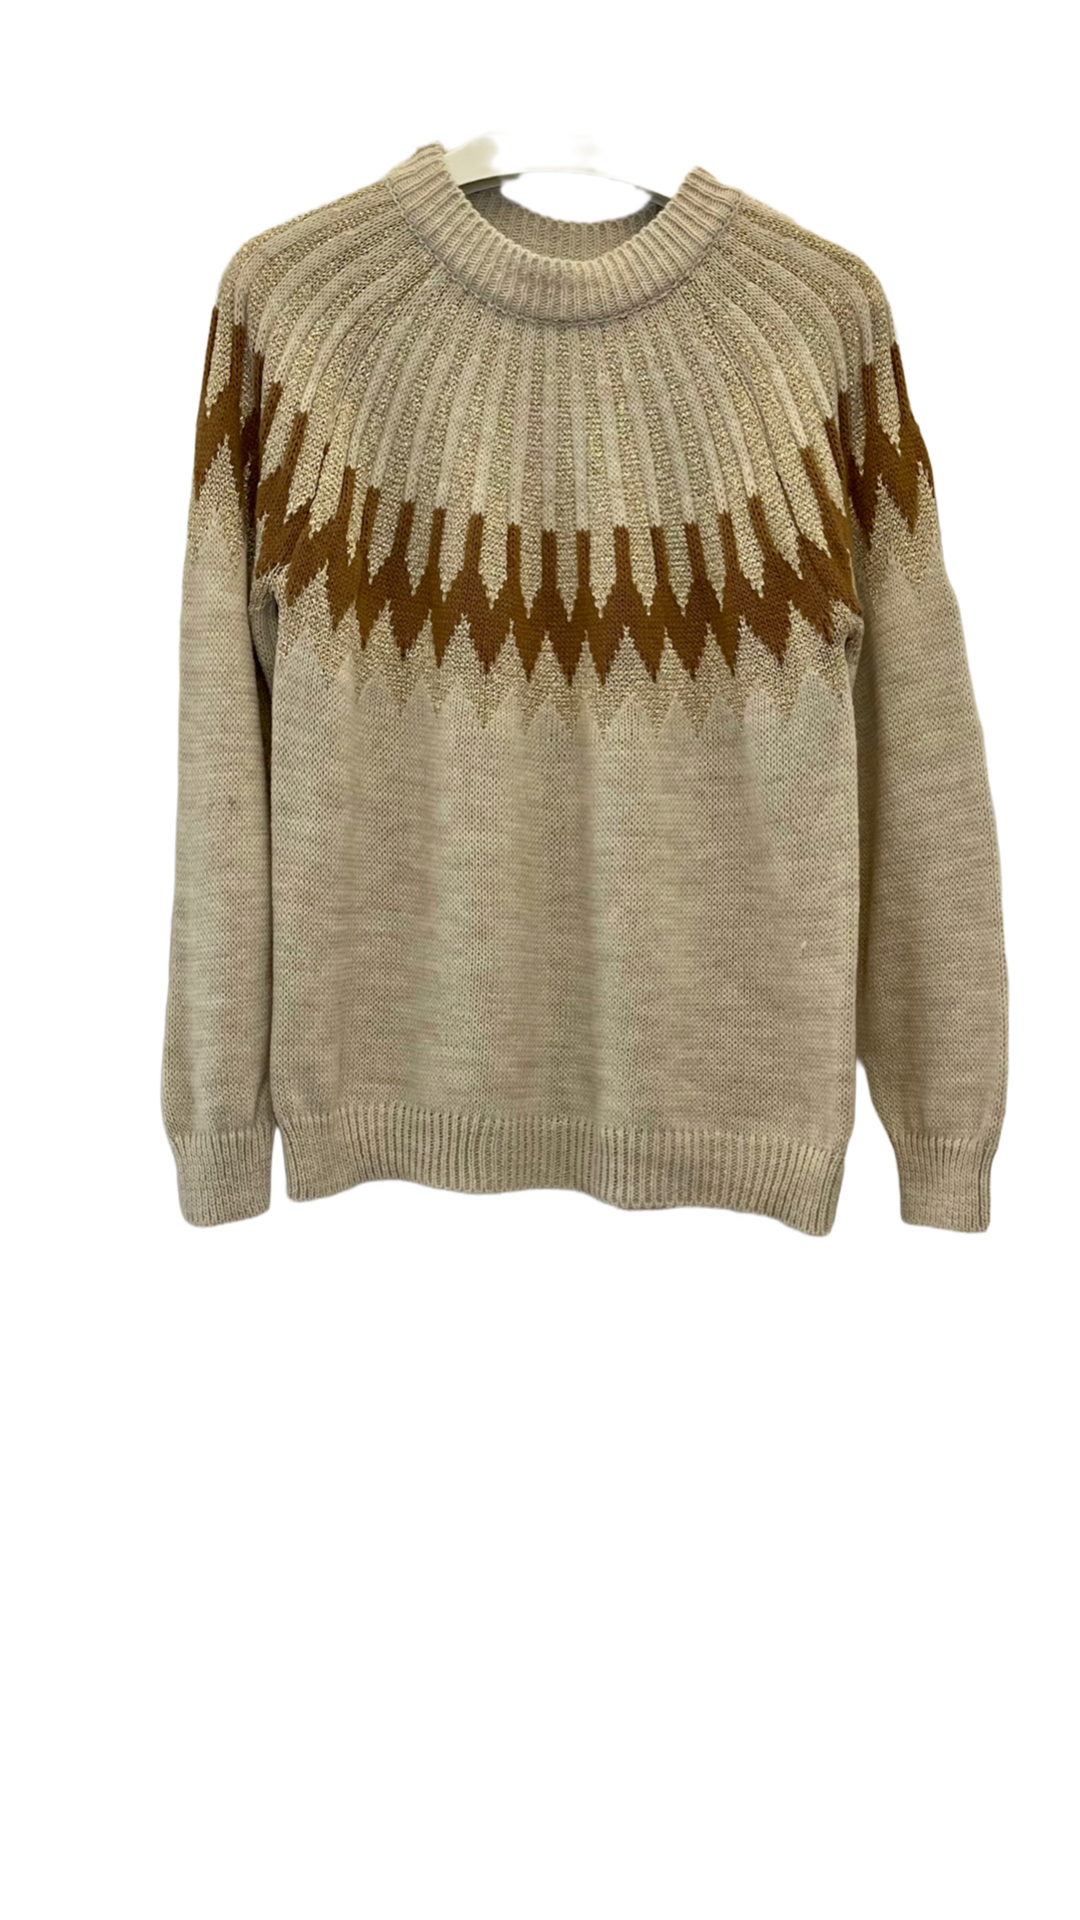 Faire Isle sweater